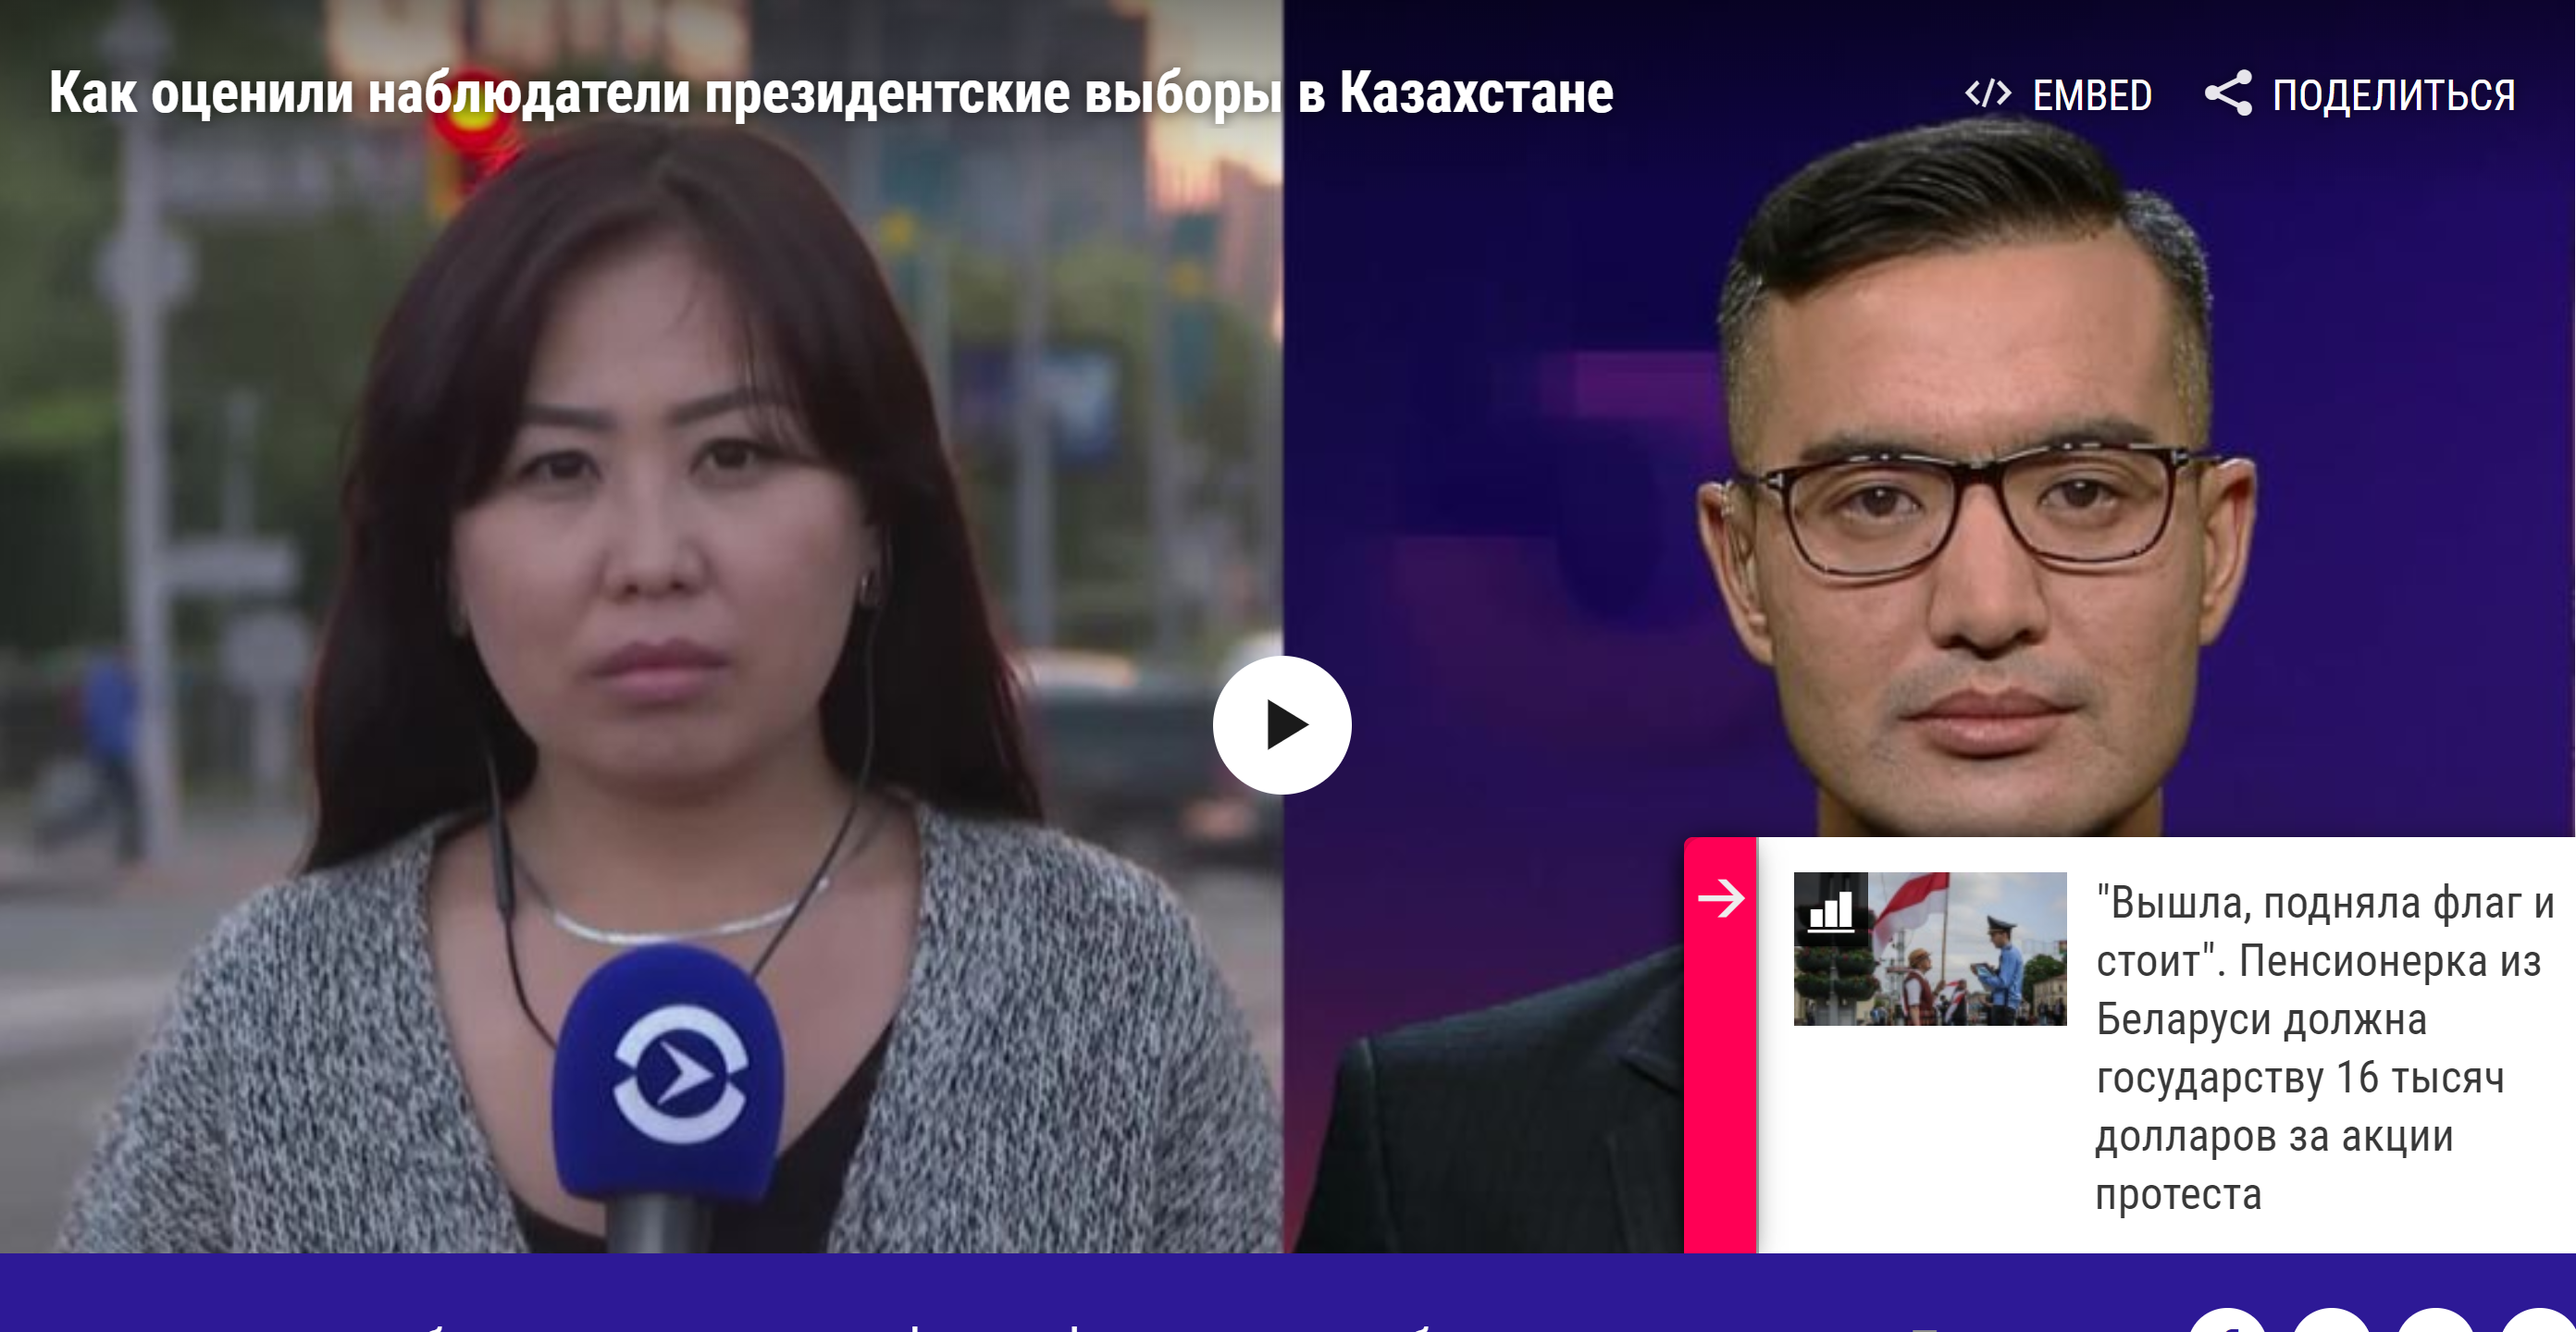 Негосударственные наблюдатели заявили о фальсификациях на выборах президента Казахстана и непризнании их итогов 